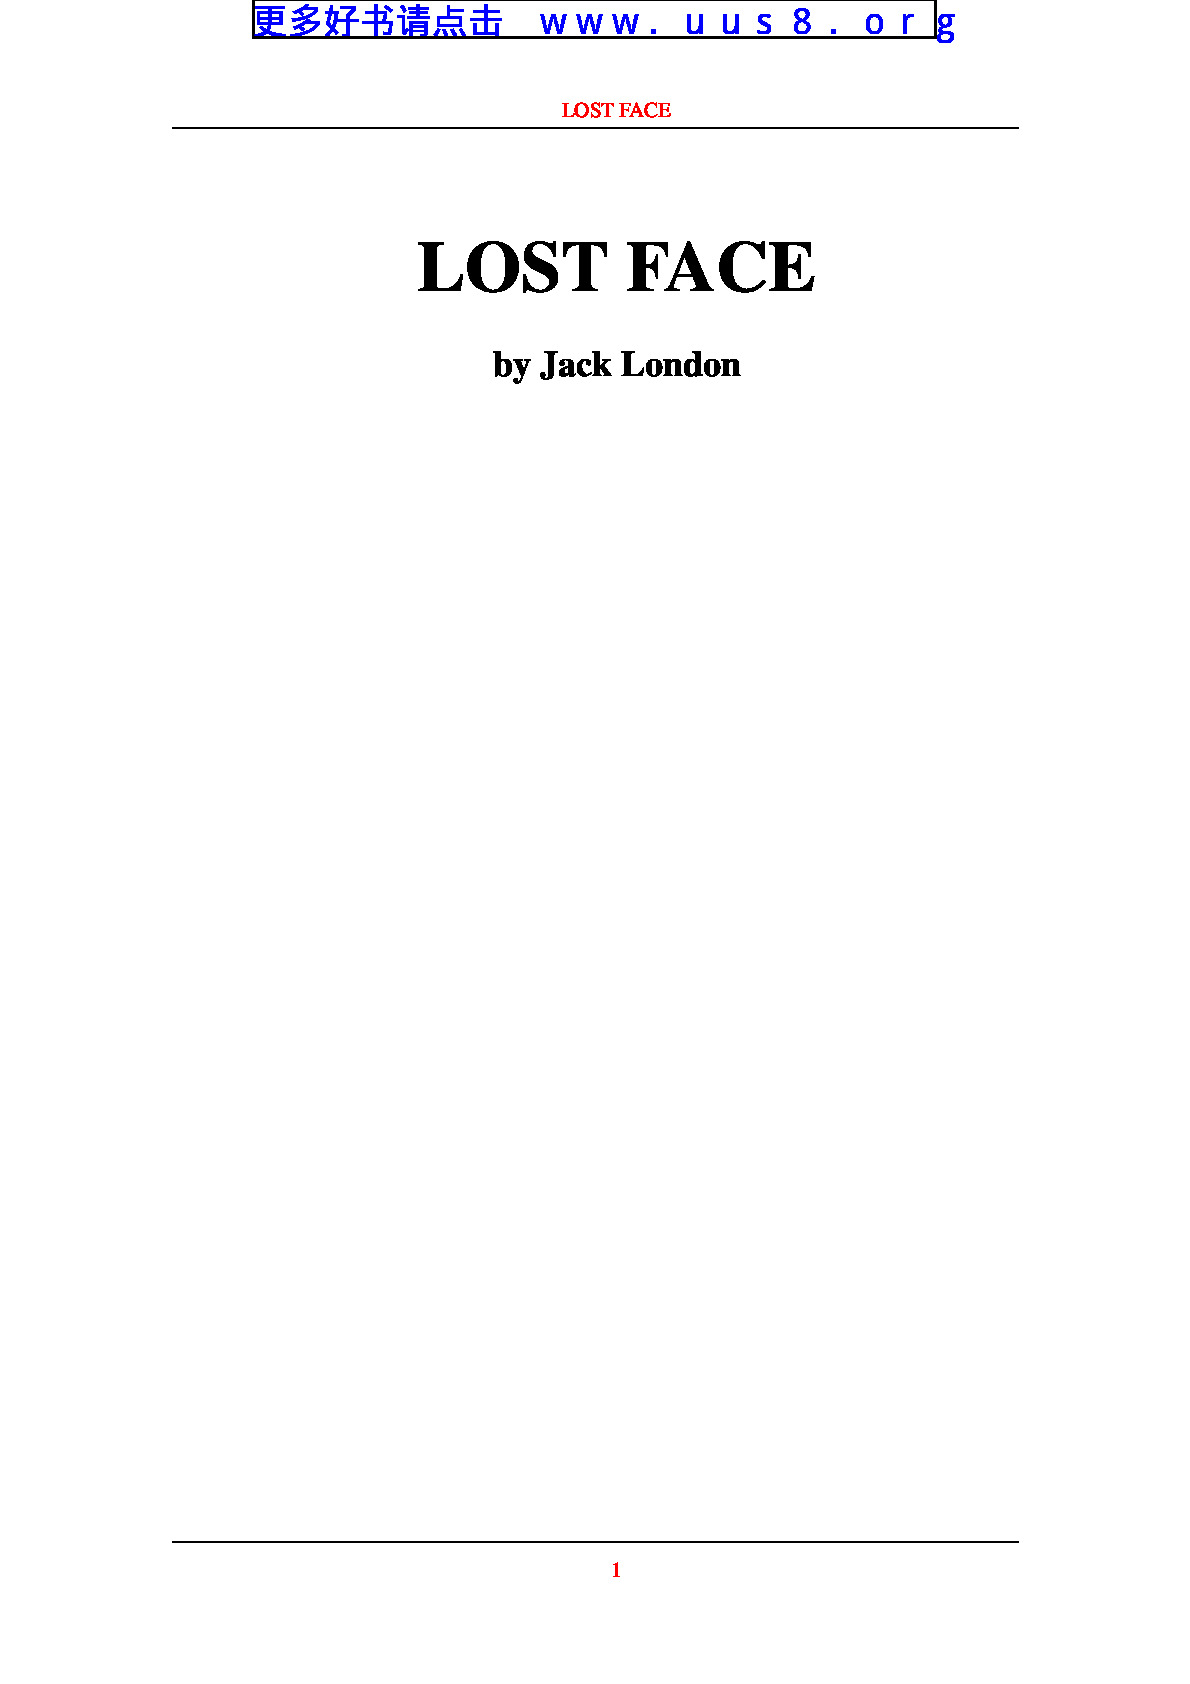 LOST_FACE(丢失的脸)